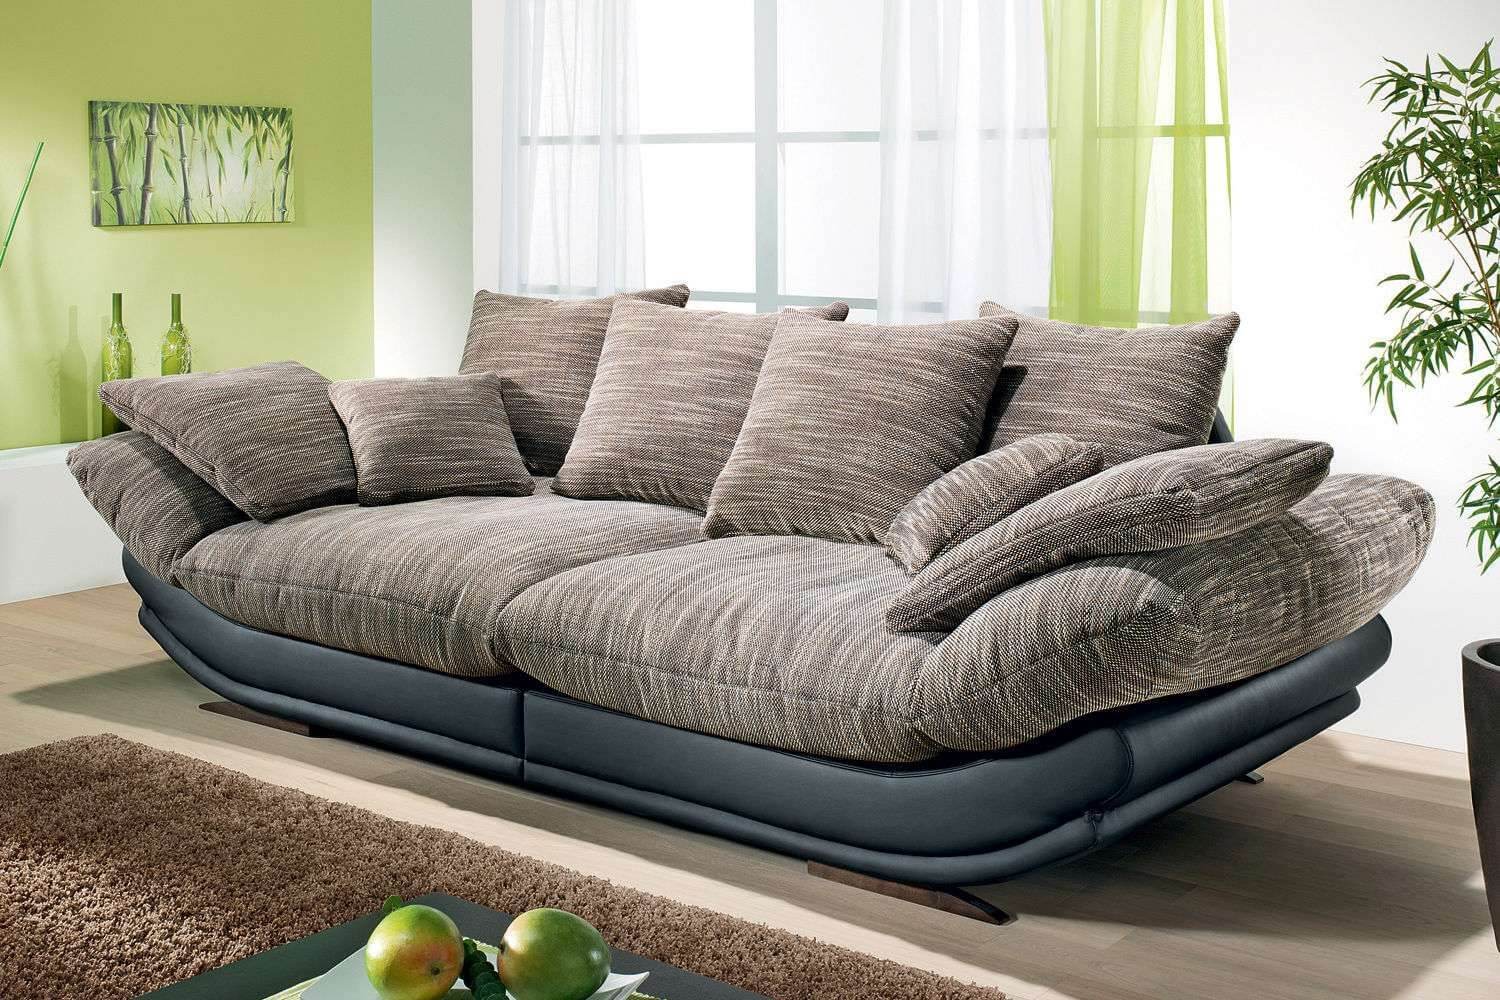 Мебель диваны купить в москве. Авиньон макси диван. Красивый стильный диван. Современный мягкий диван. Красивые диваны для гостиной.